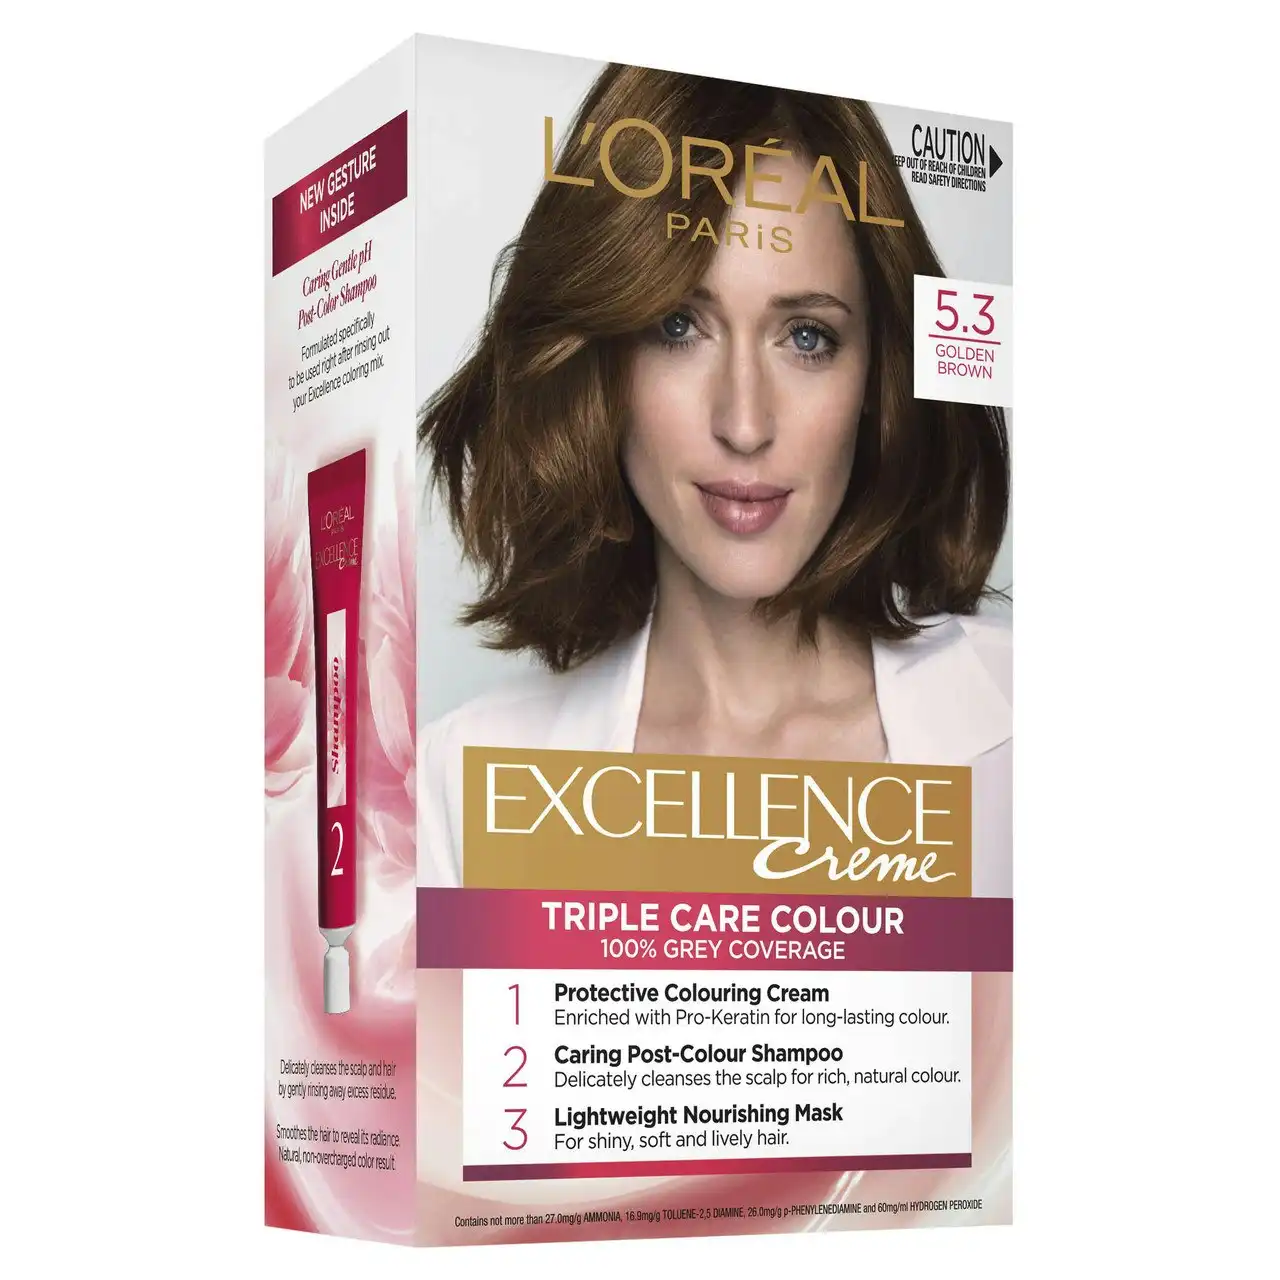 L'Oreal Paris Excellence Creme Permanent Hair Colour - 5.3 Golden Brown